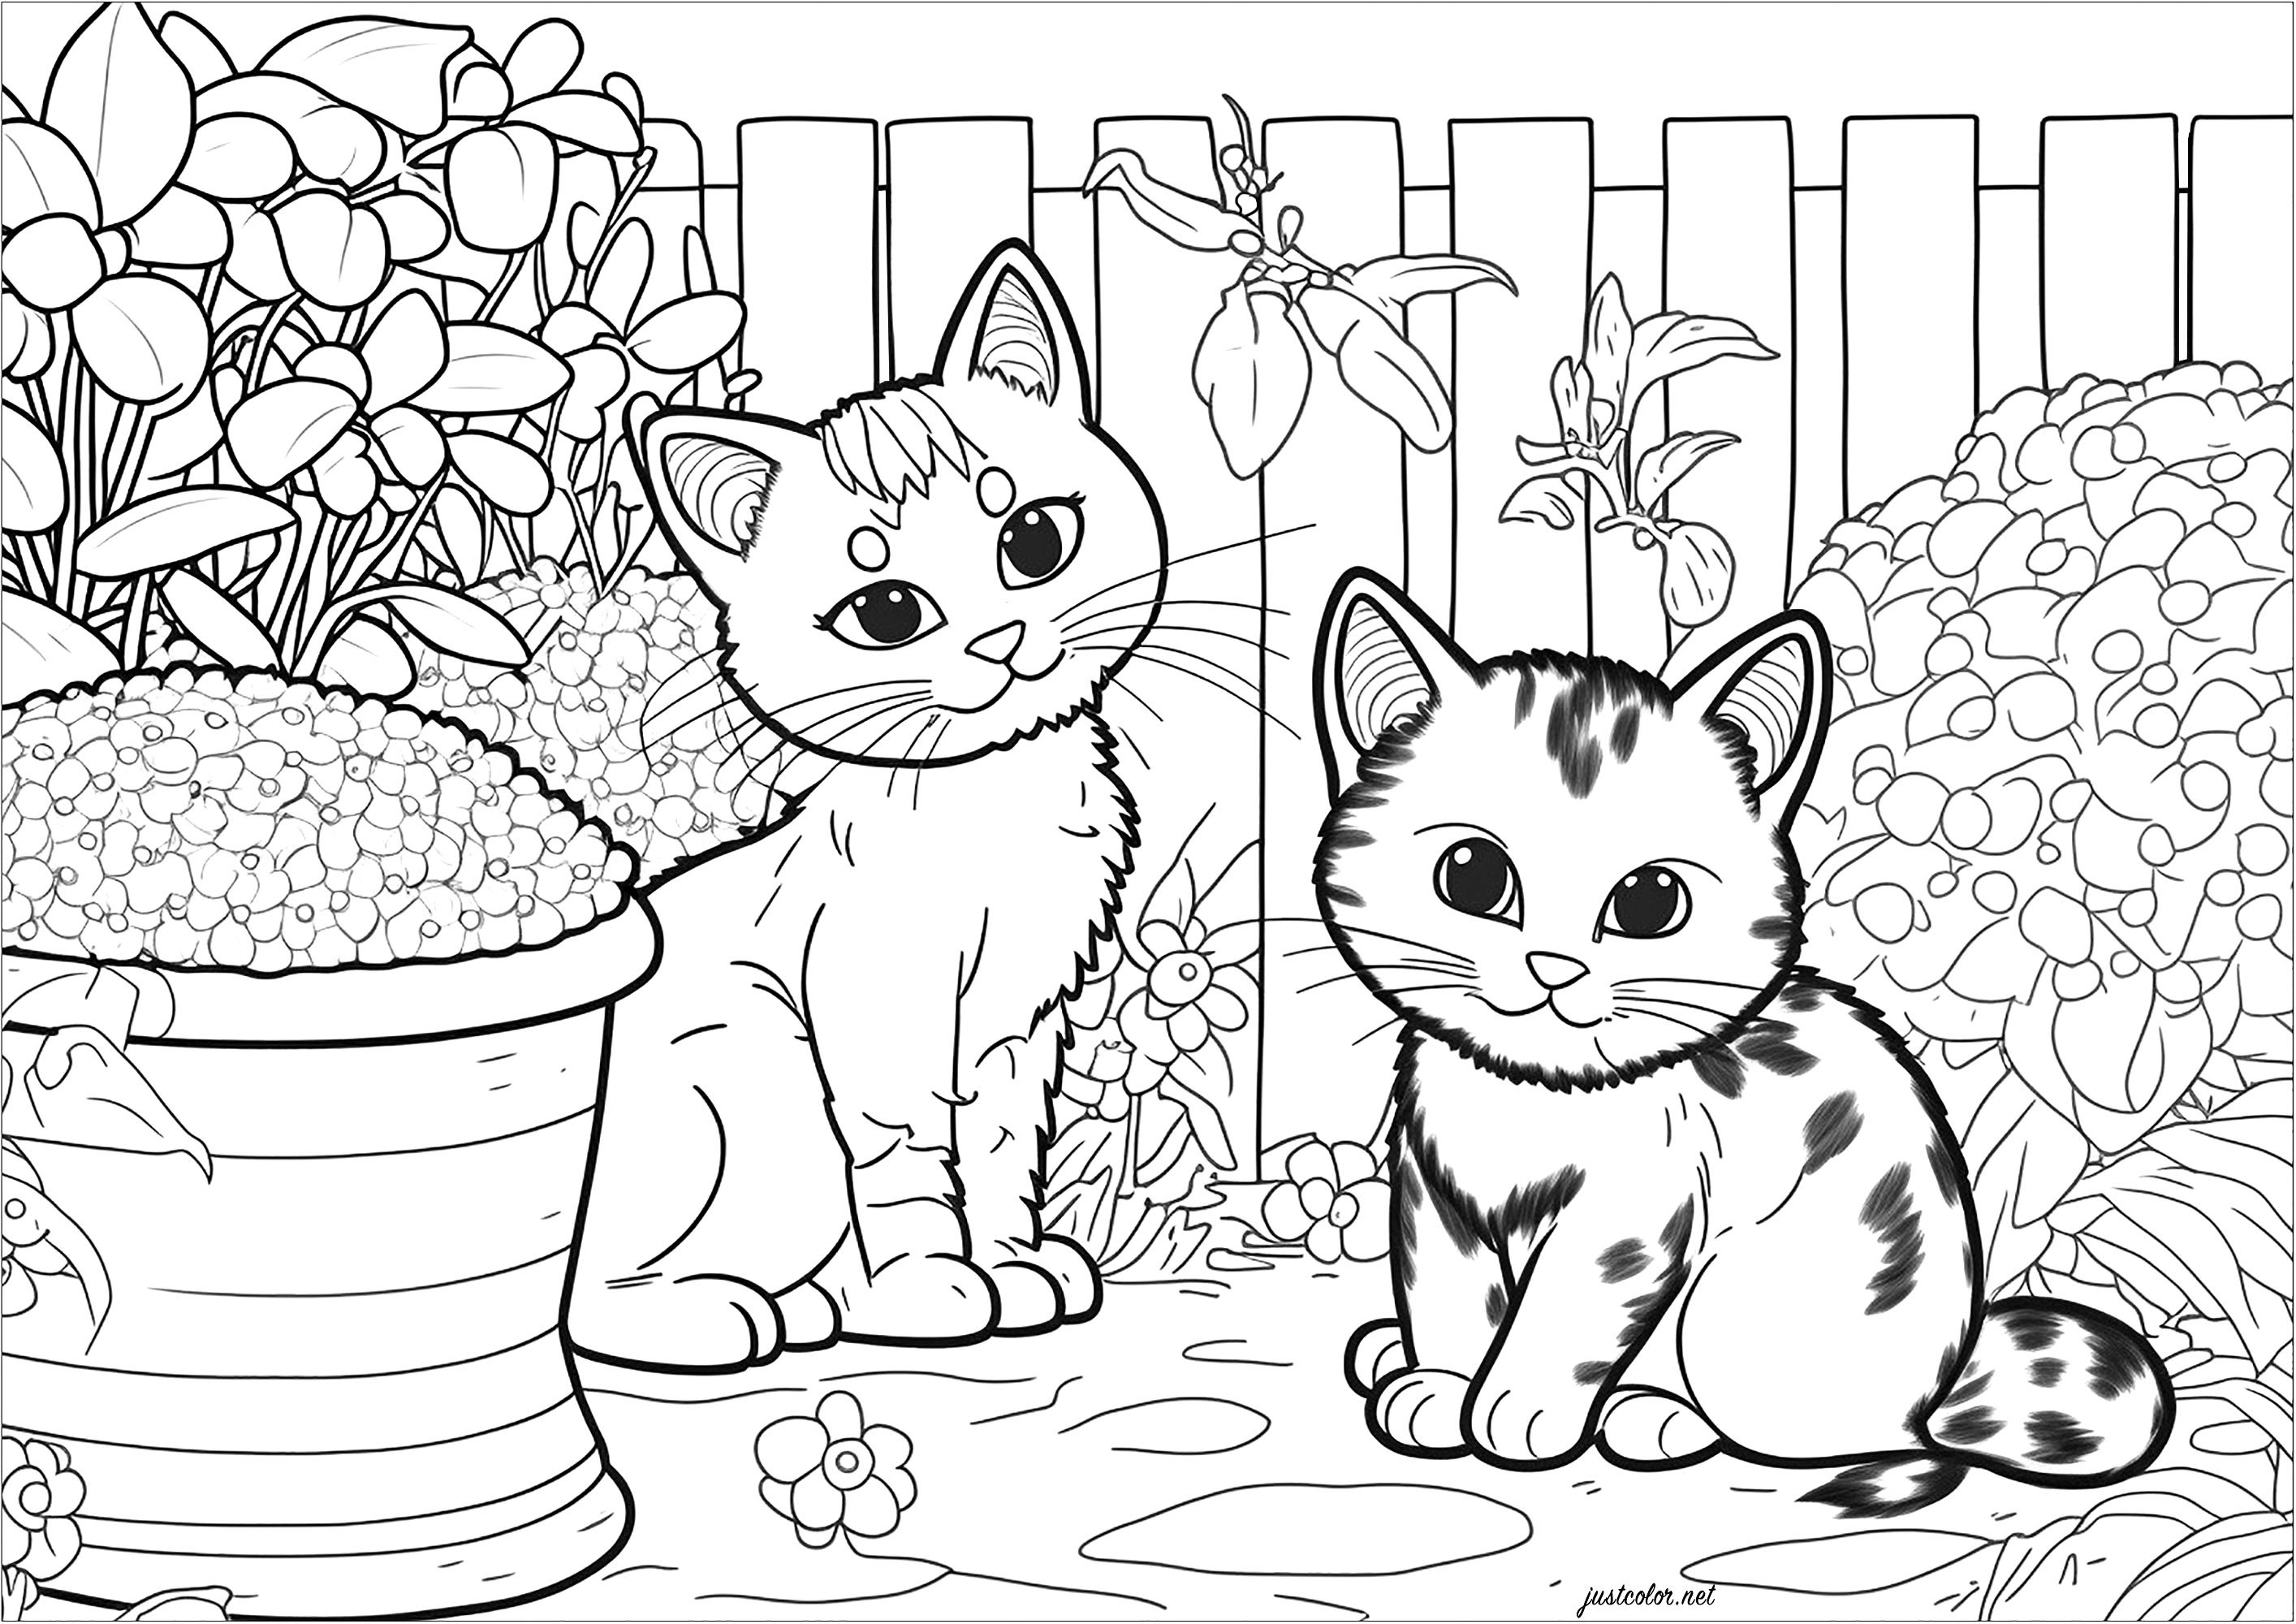 Deux petits chats dans le jardin à colorier. Ce coloriage est à la fois mignon et relaxant. Il représente deux petits chats jouant dans un jardin. Les chats sont entourés d'une variété d'éléments végétaux, tels que des fleurs, des buissons, des arbres et des herbes. C'est un excellent moyen de s'évader dans un monde de couleurs et de nature.